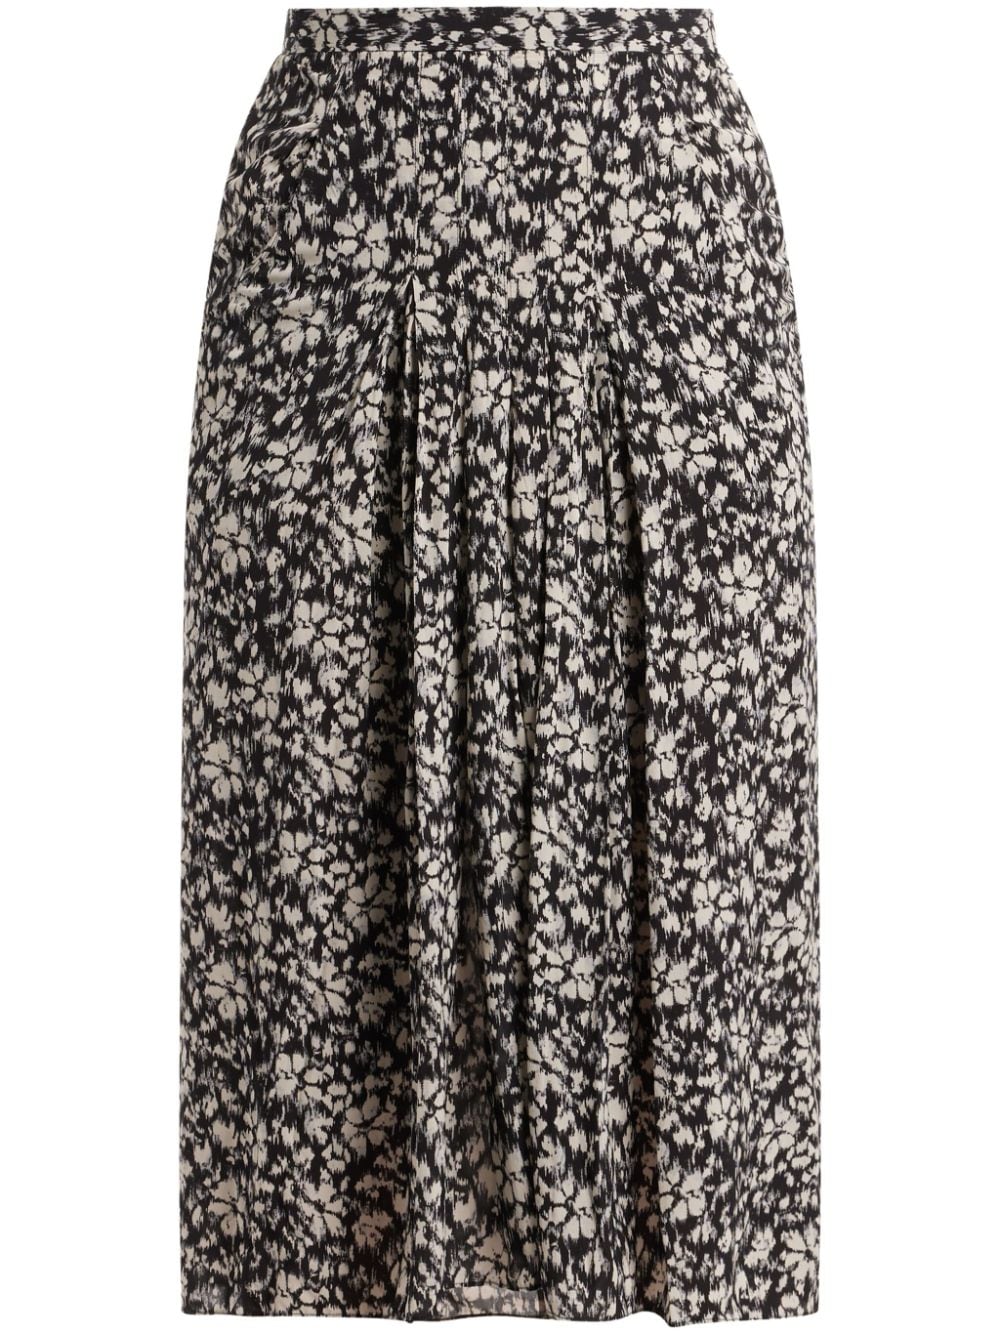 MARANT ÉTOILE floral-print high-waisted midi skirt - Black von MARANT ÉTOILE